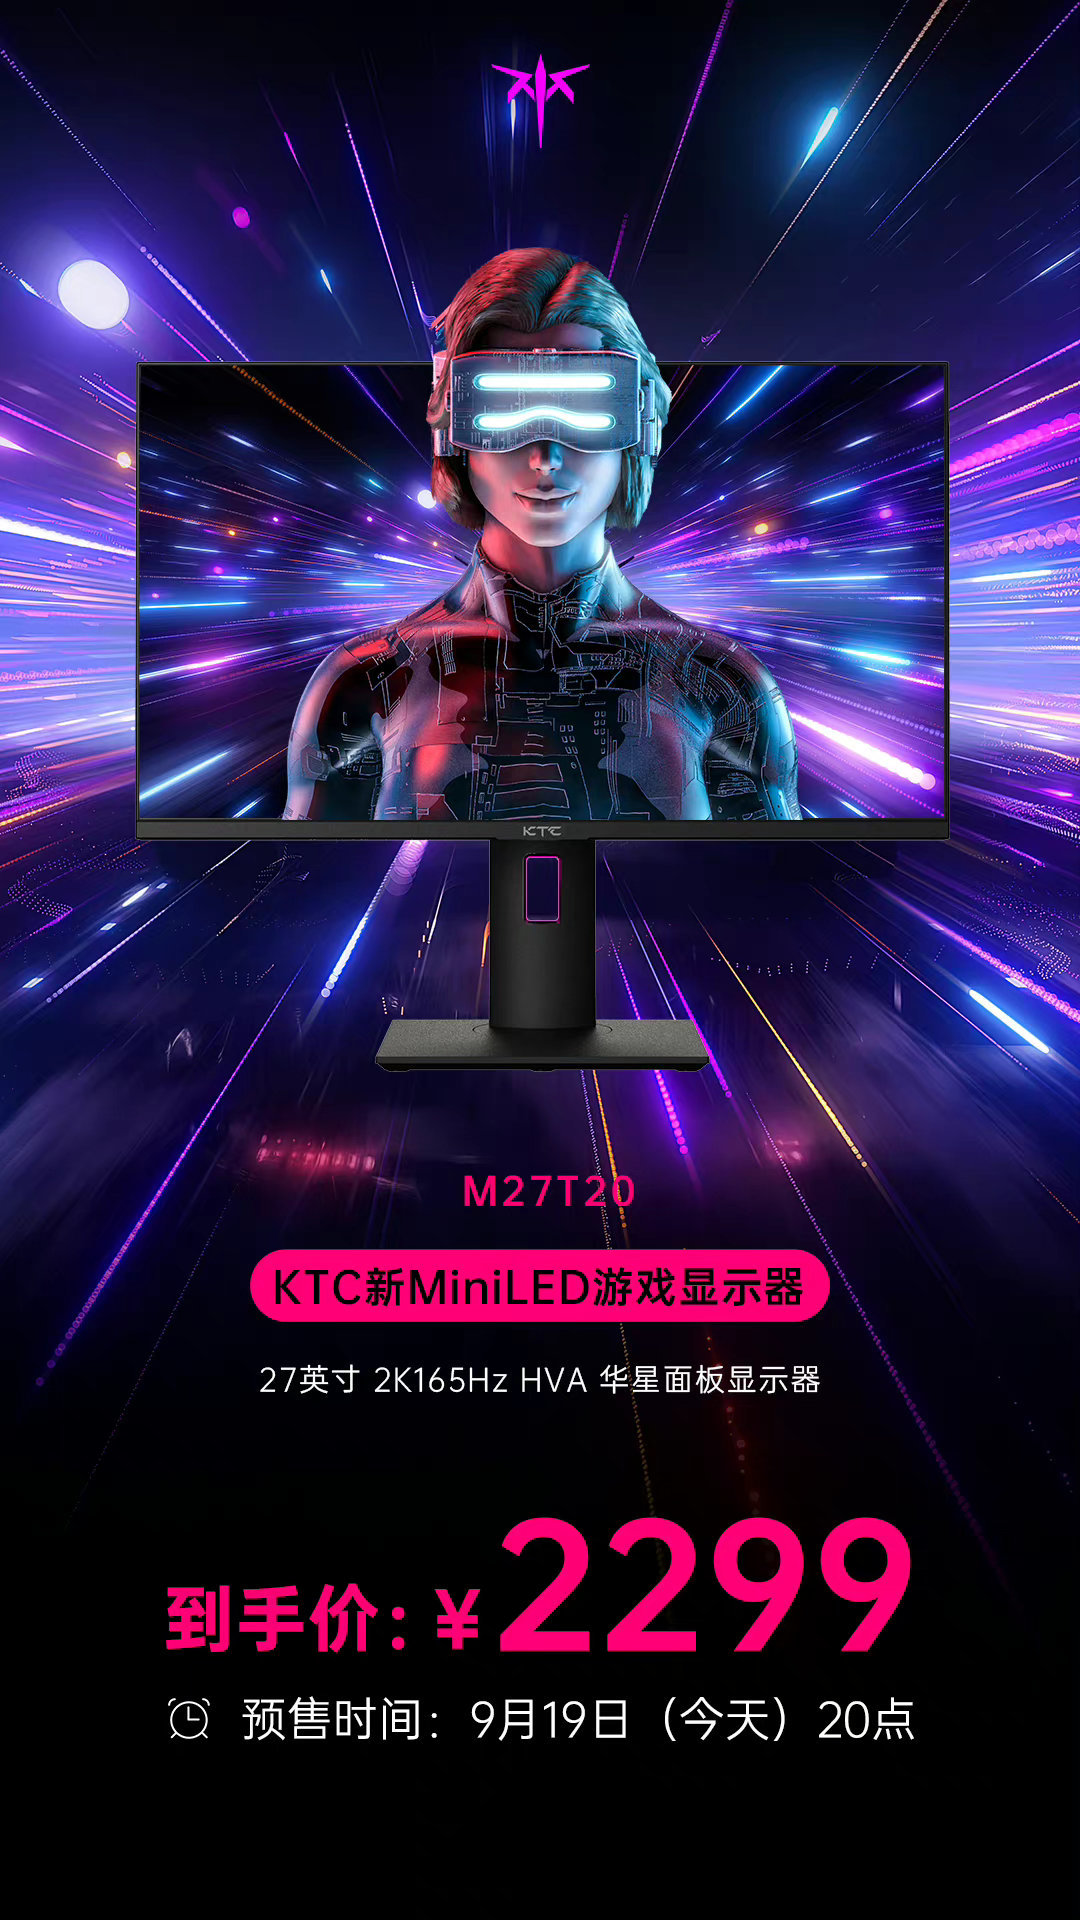 KTC 推出 M27T20 电竞屏：2K MiniLED 面板、全功能 C 口